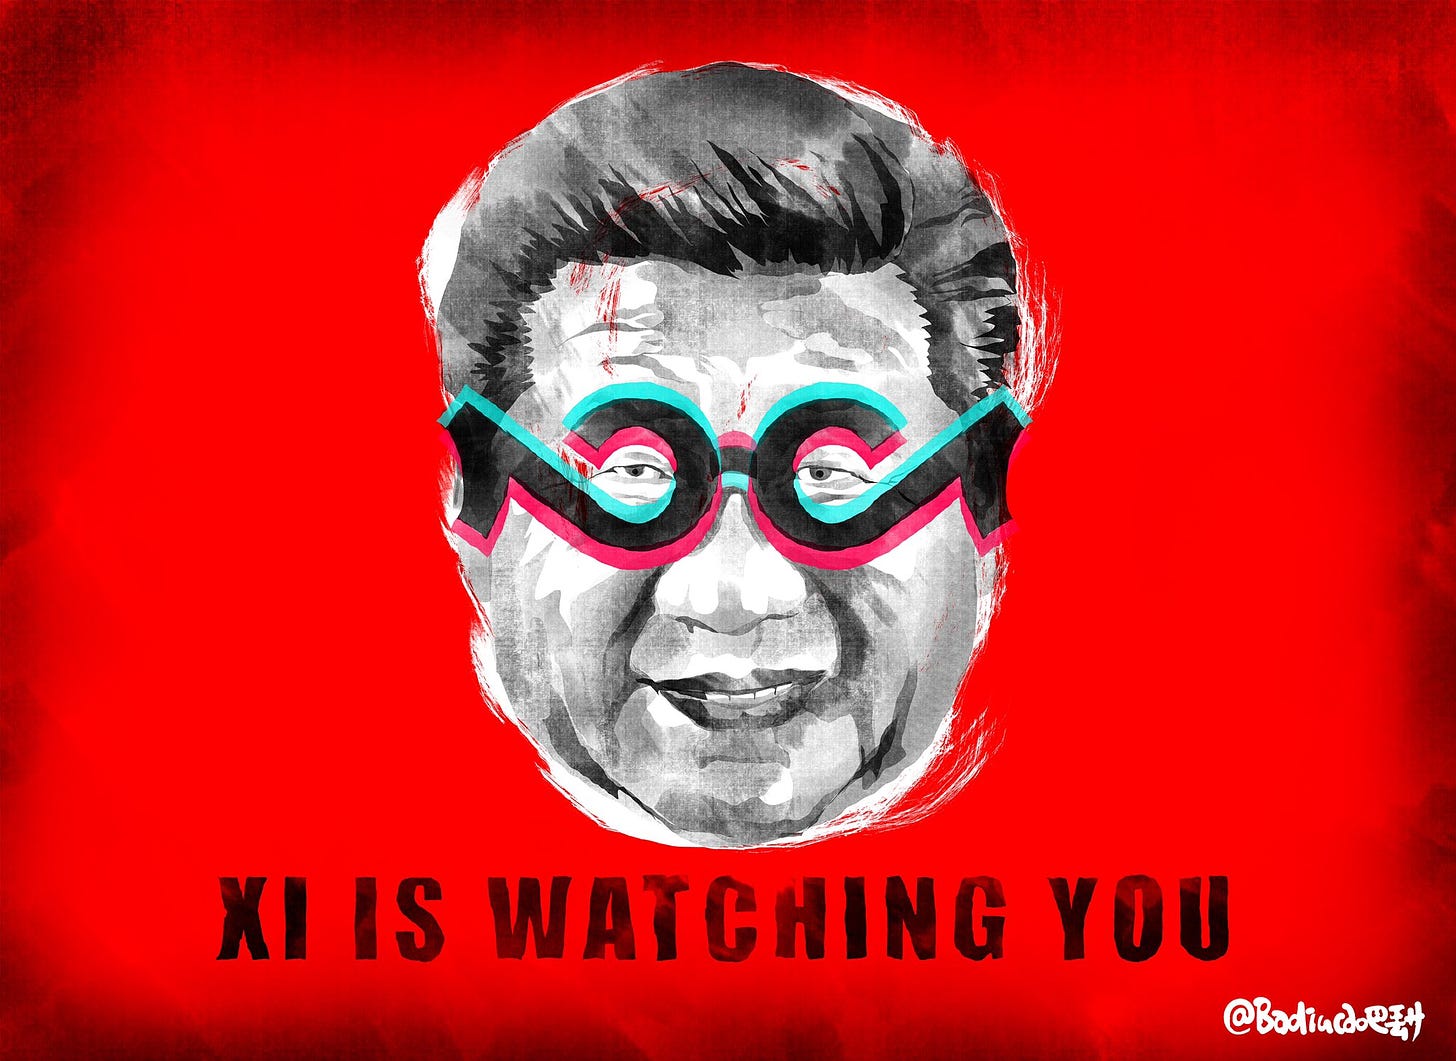 巴丢草Bad ї ucao on Twitter: "Big Brother Xi Is Watching You. My cartoon for  next Monday's @theage and @smh on #TikTok confirms US user data can be  accessed in China.